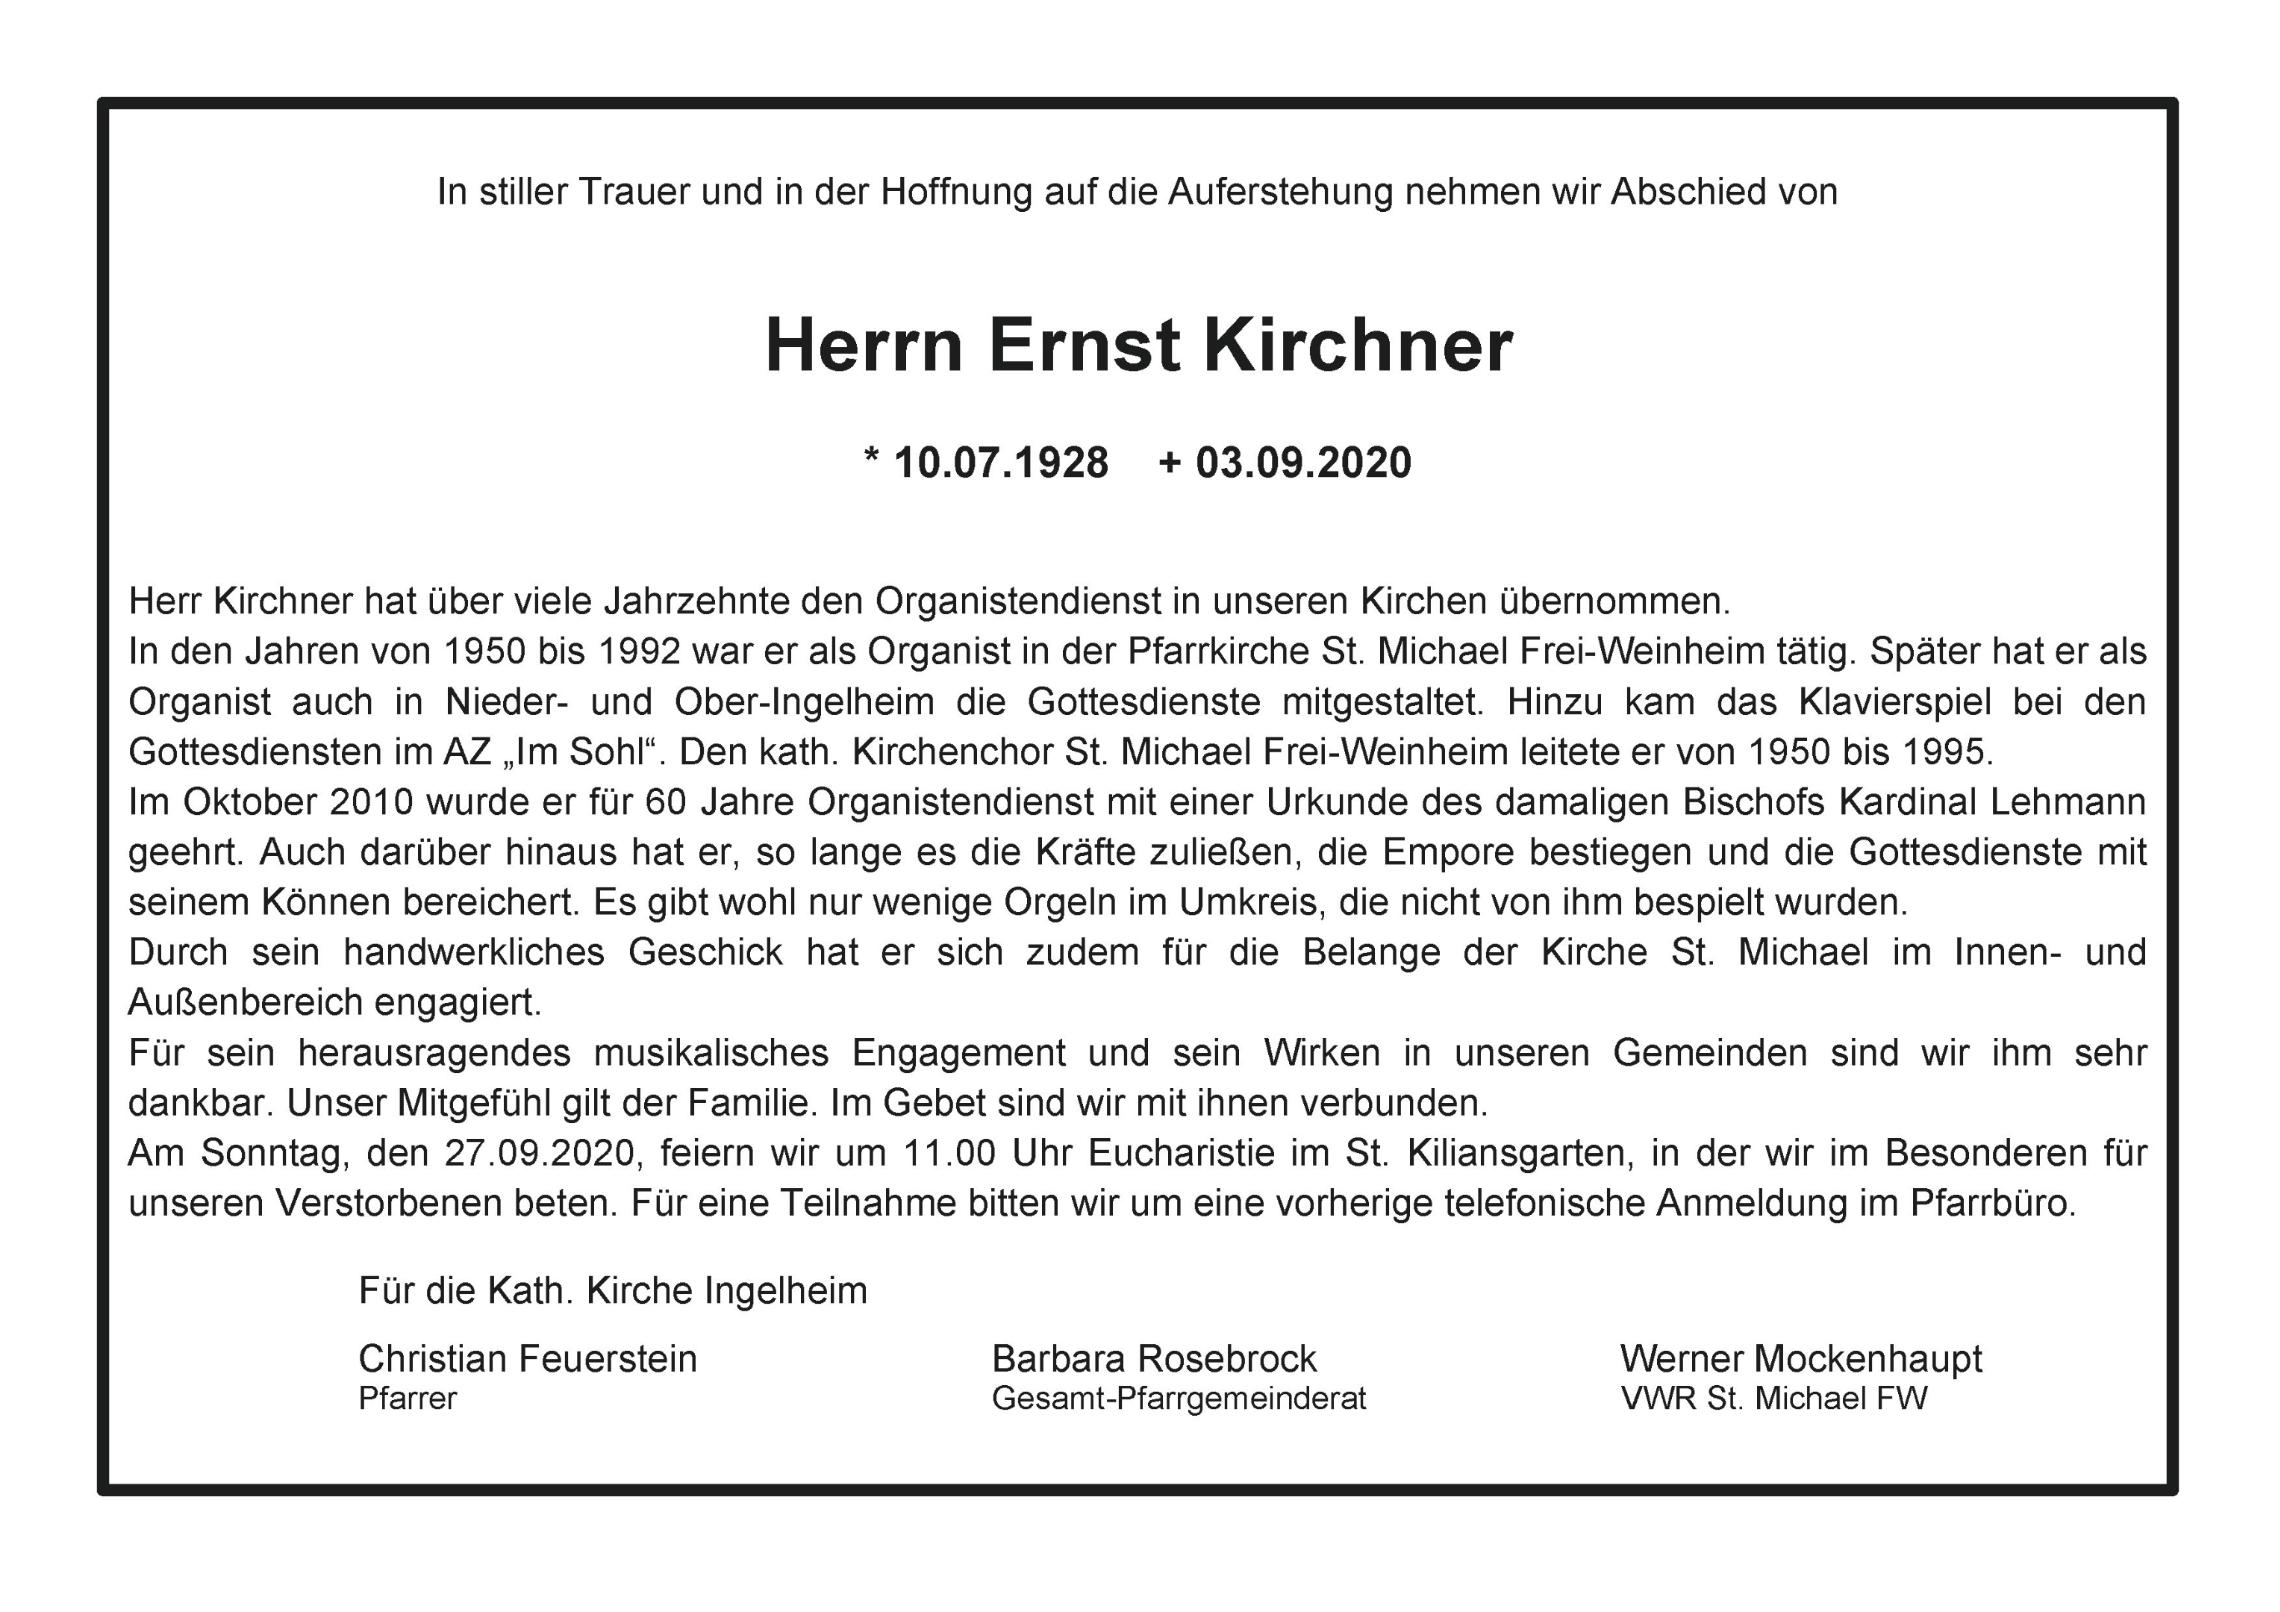 Traueranzeige für Ernst Kirchner (c) KKI